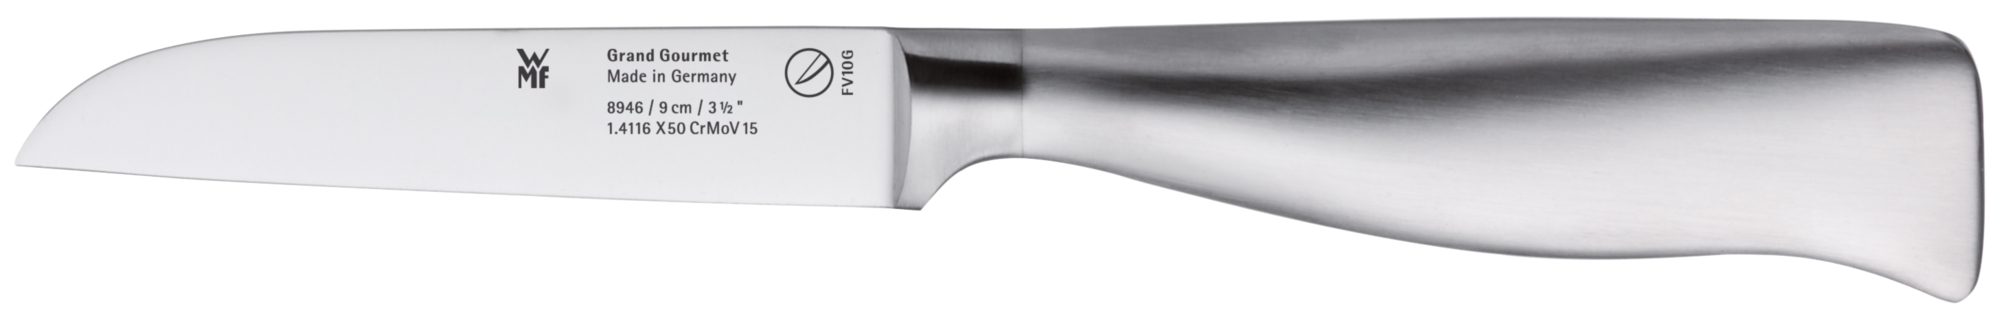 Овощной нож Grand Gourmet 9 см нож для овощей regent inox длина 90 210 мм